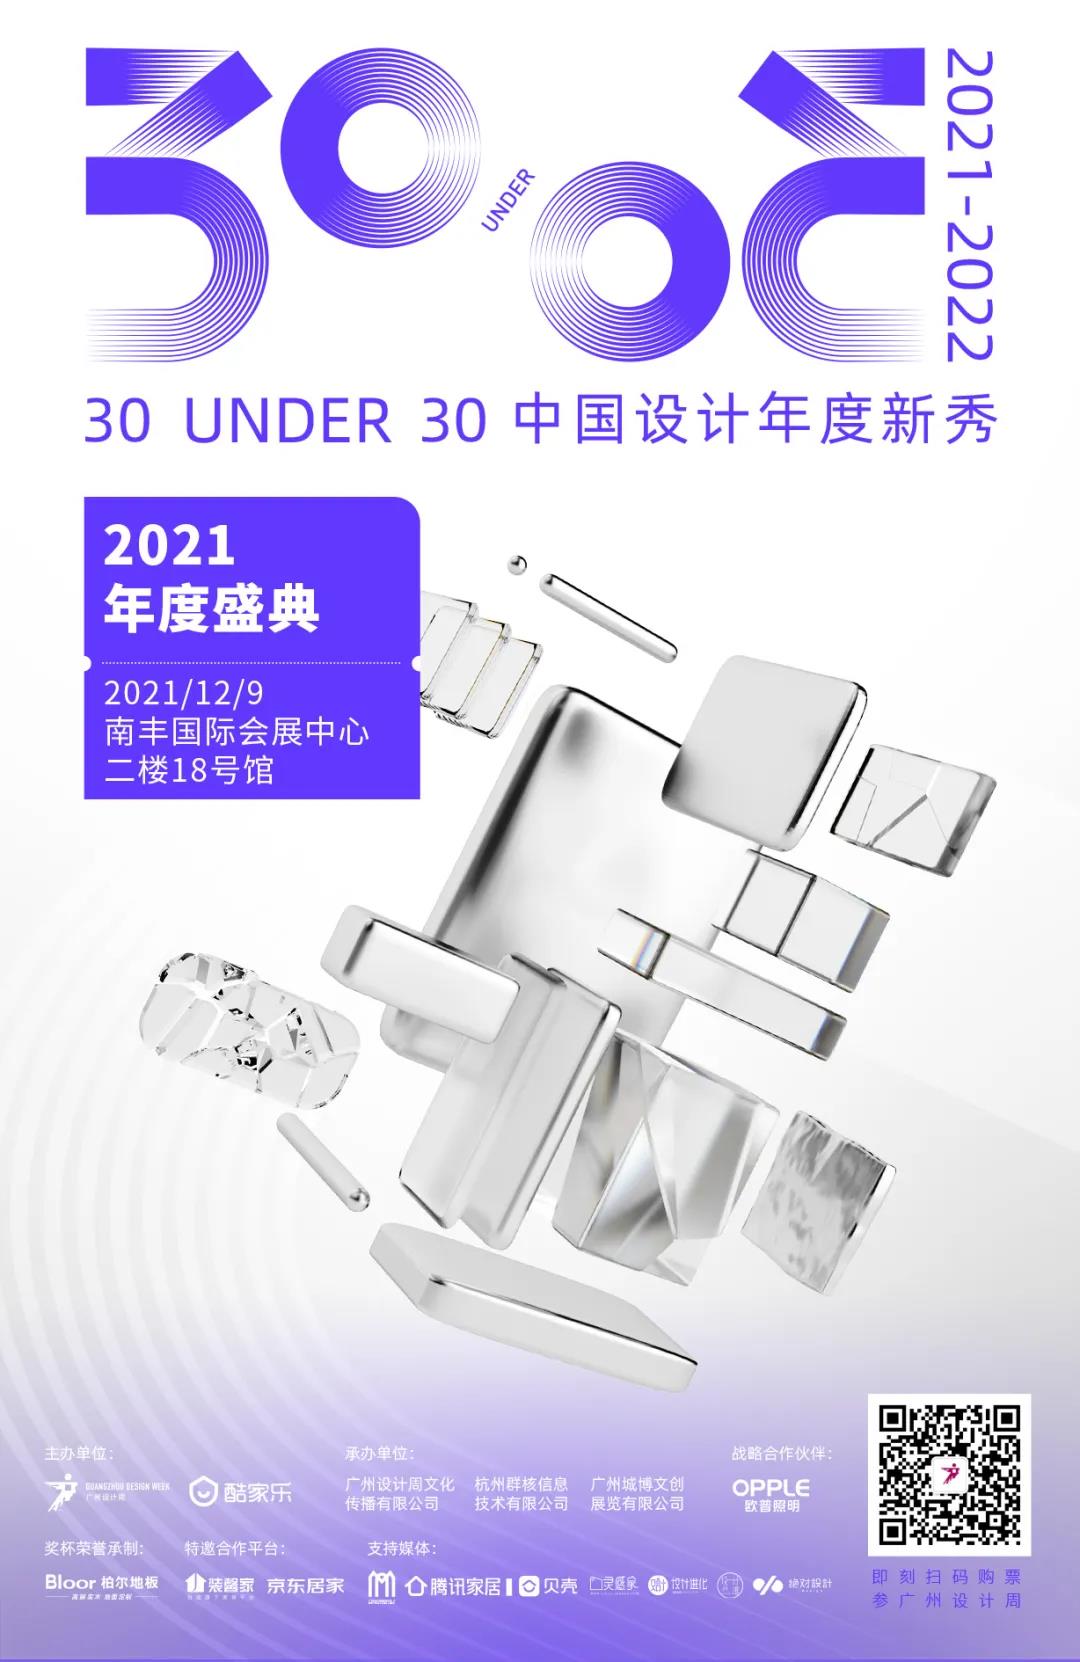 必收藏︱广州设计周看点清单，错过这波2021就白过了